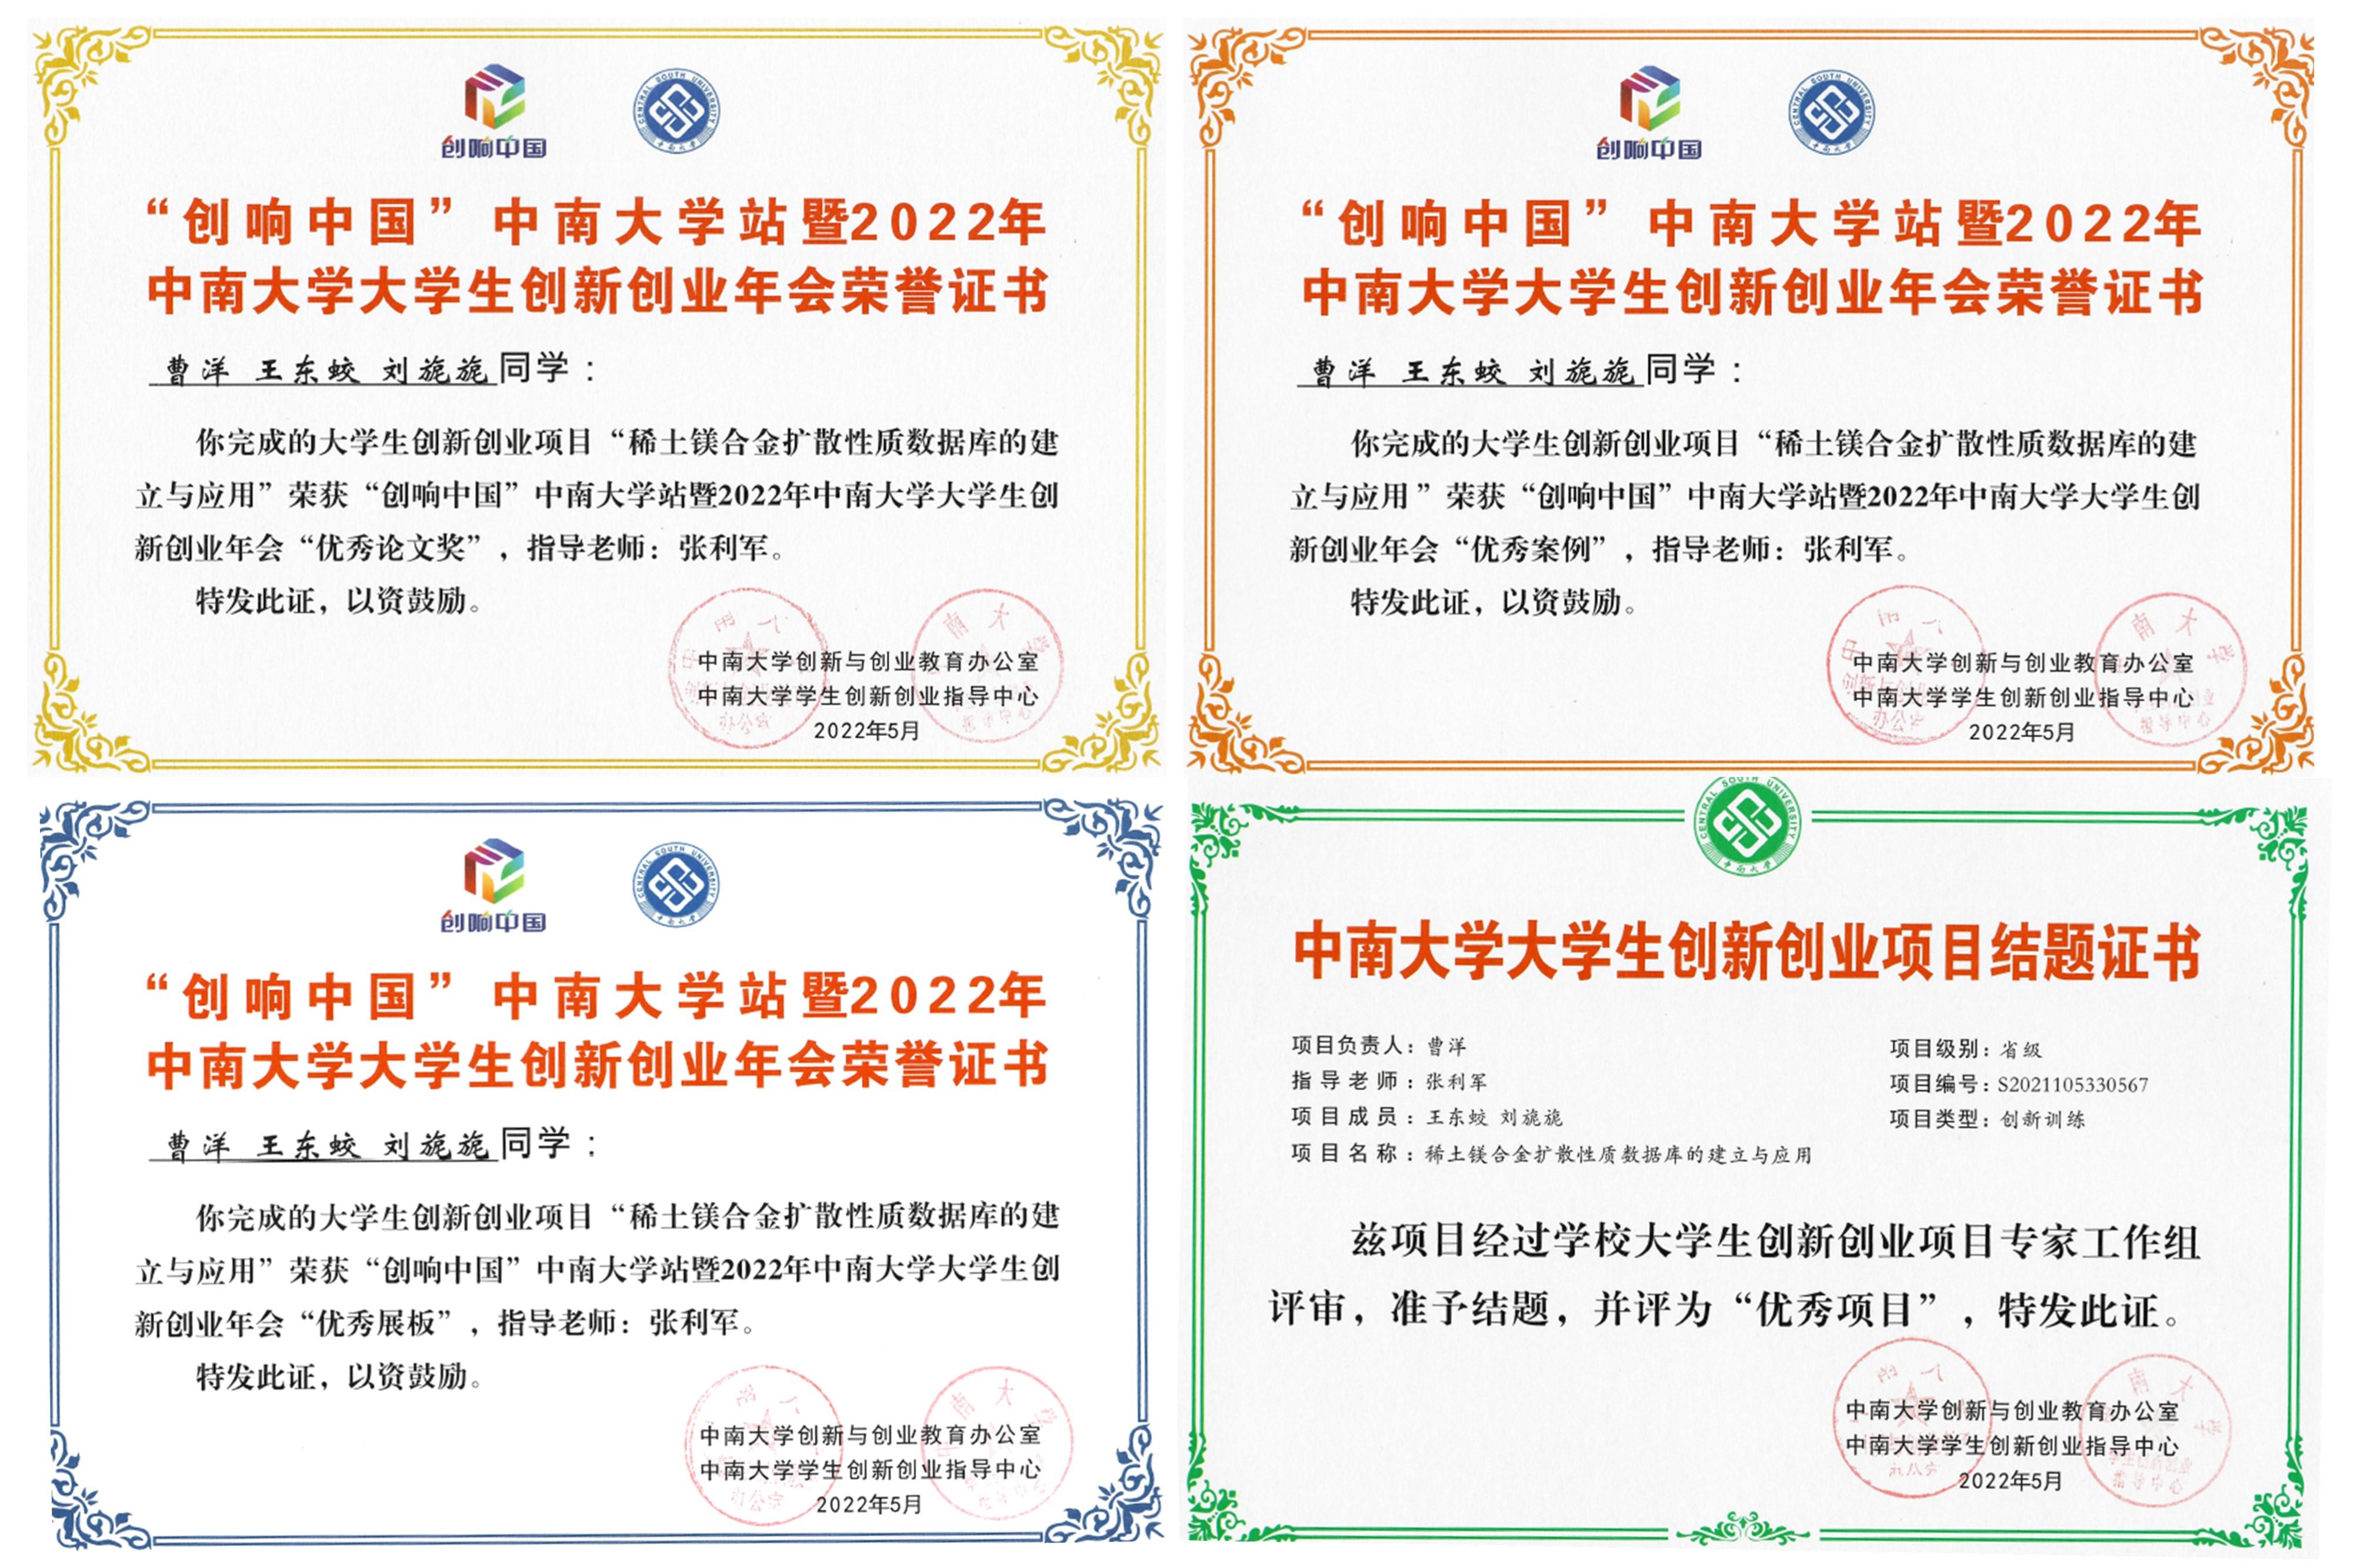 曹洋等在“创响中国”中荣获四项奖项